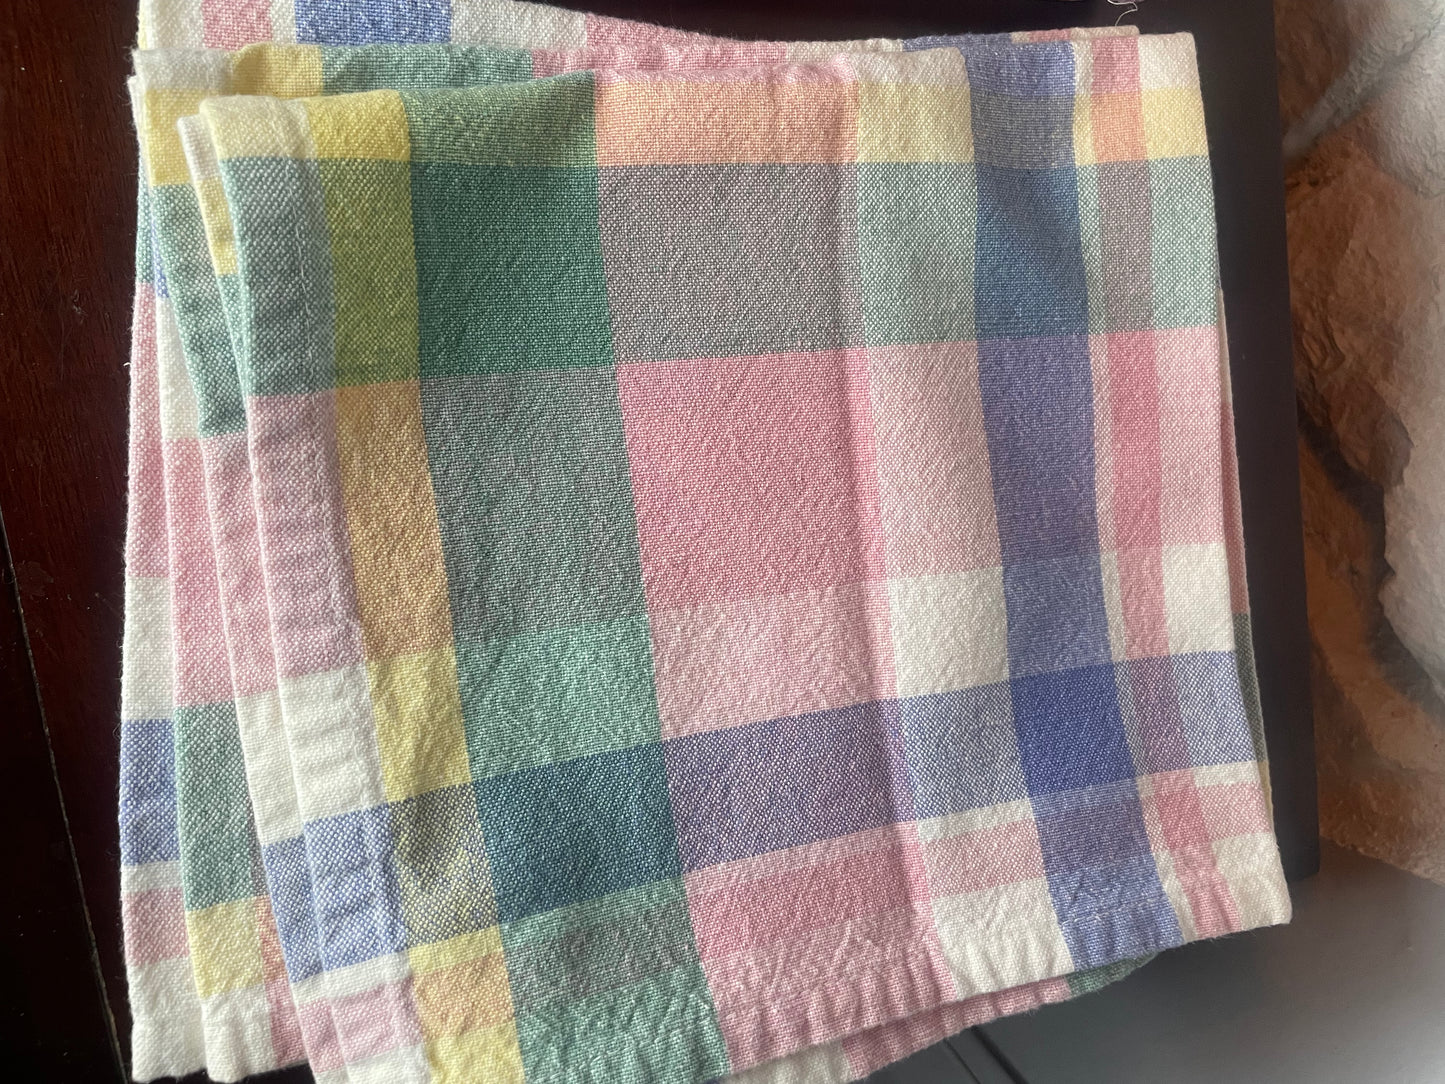 locally made cloth napkins, set of 6